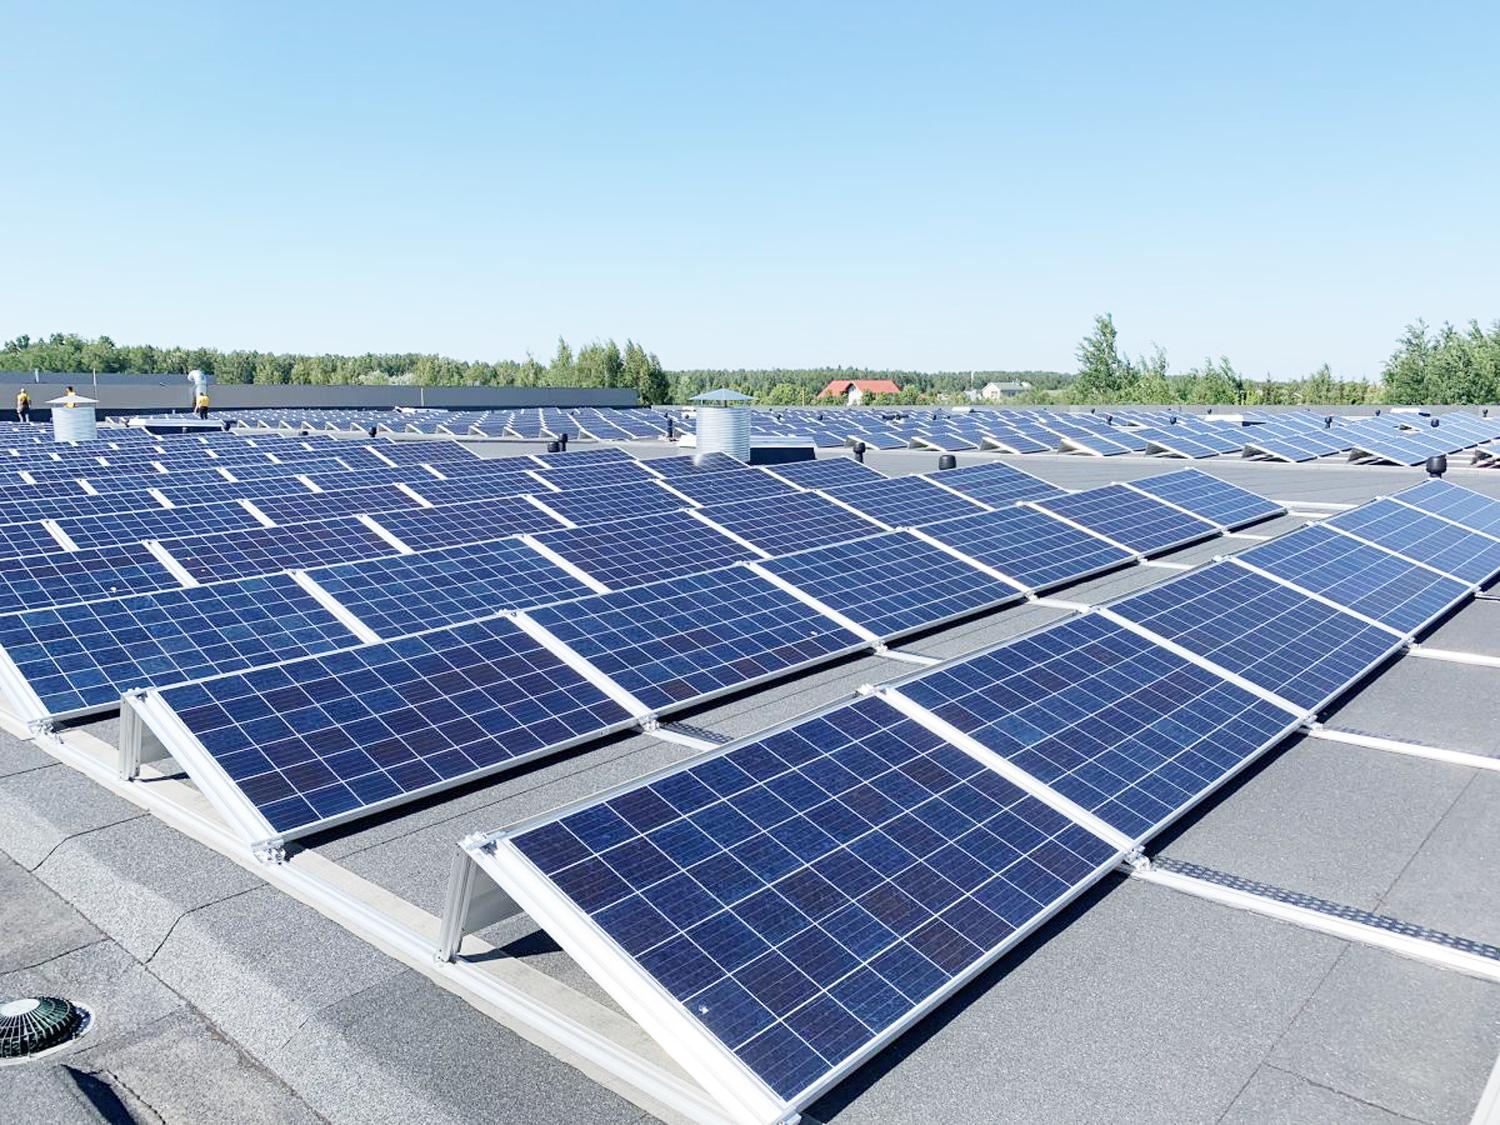 Saulės elektrinei Ukmergėje jau numatyti sklypai / Iki šio amžiaus vidurio saulės energija gali tapti pagrindiniu elektros energijos šaltiniu pasaulyje.  sauleselektrines.lt nuotr.